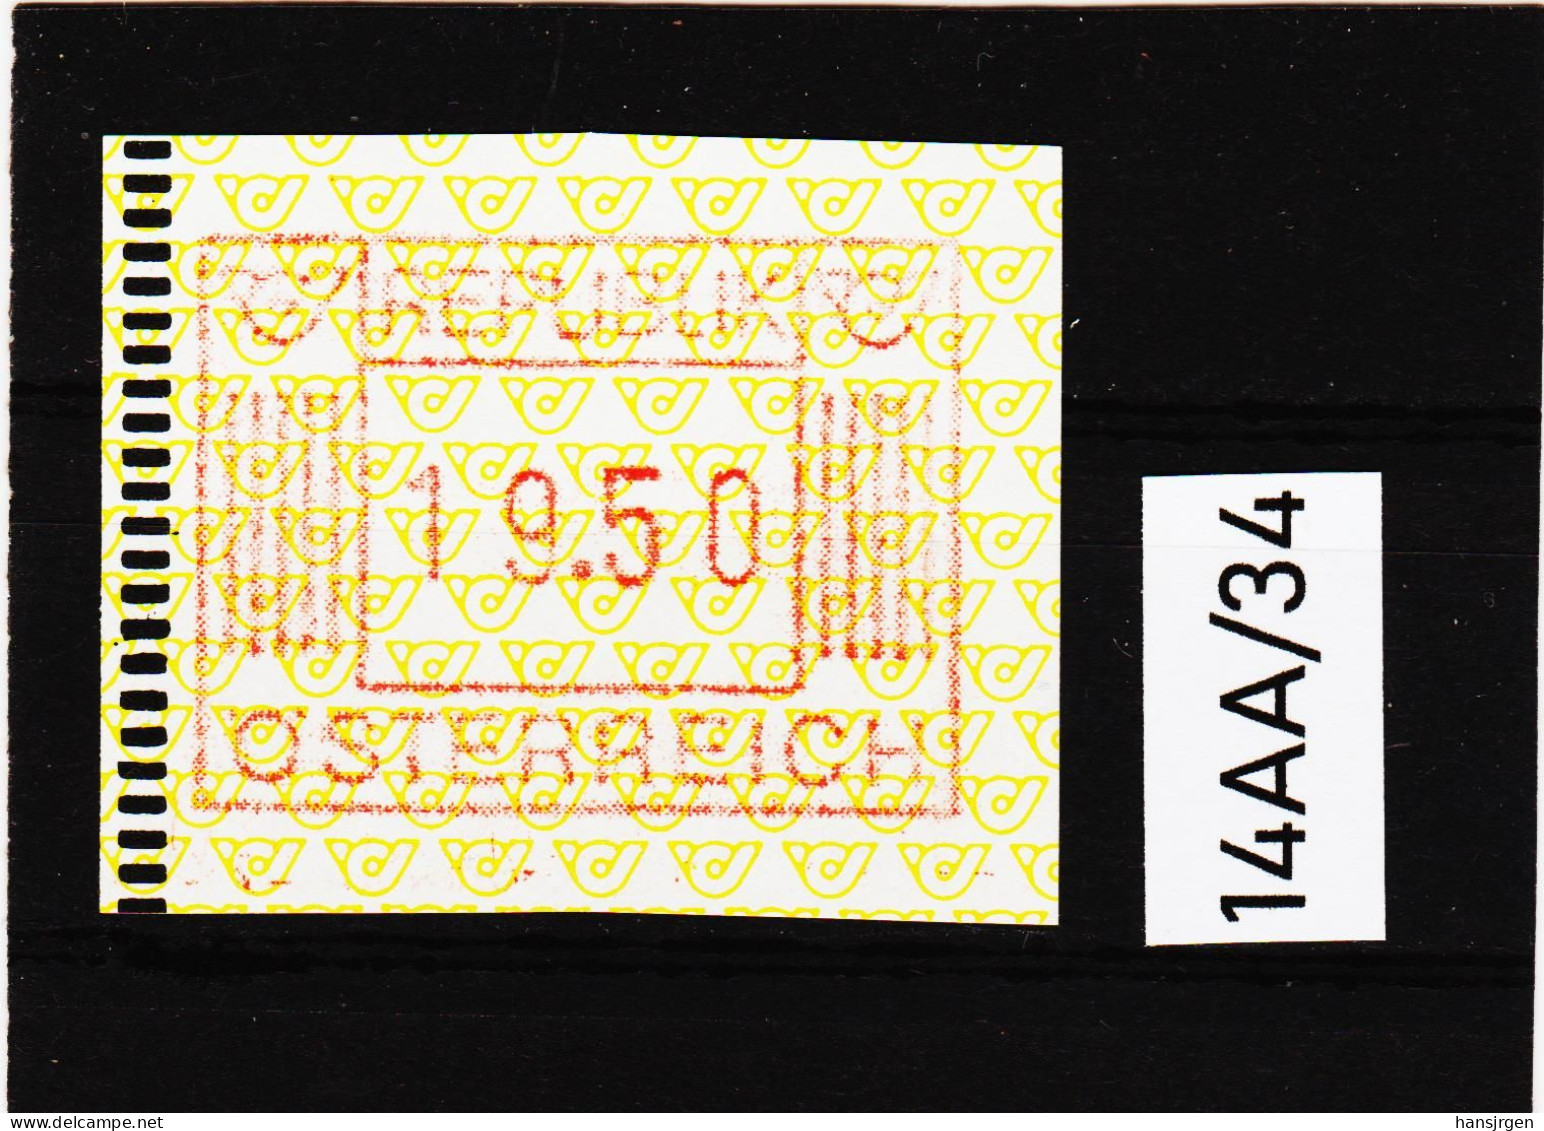 14AA/34  ÖSTERREICH 1983 AUTOMATENMARKEN 1. AUSGABE  19,50 SCHILLING   ** Postfrisch - Automaatzegels [ATM]